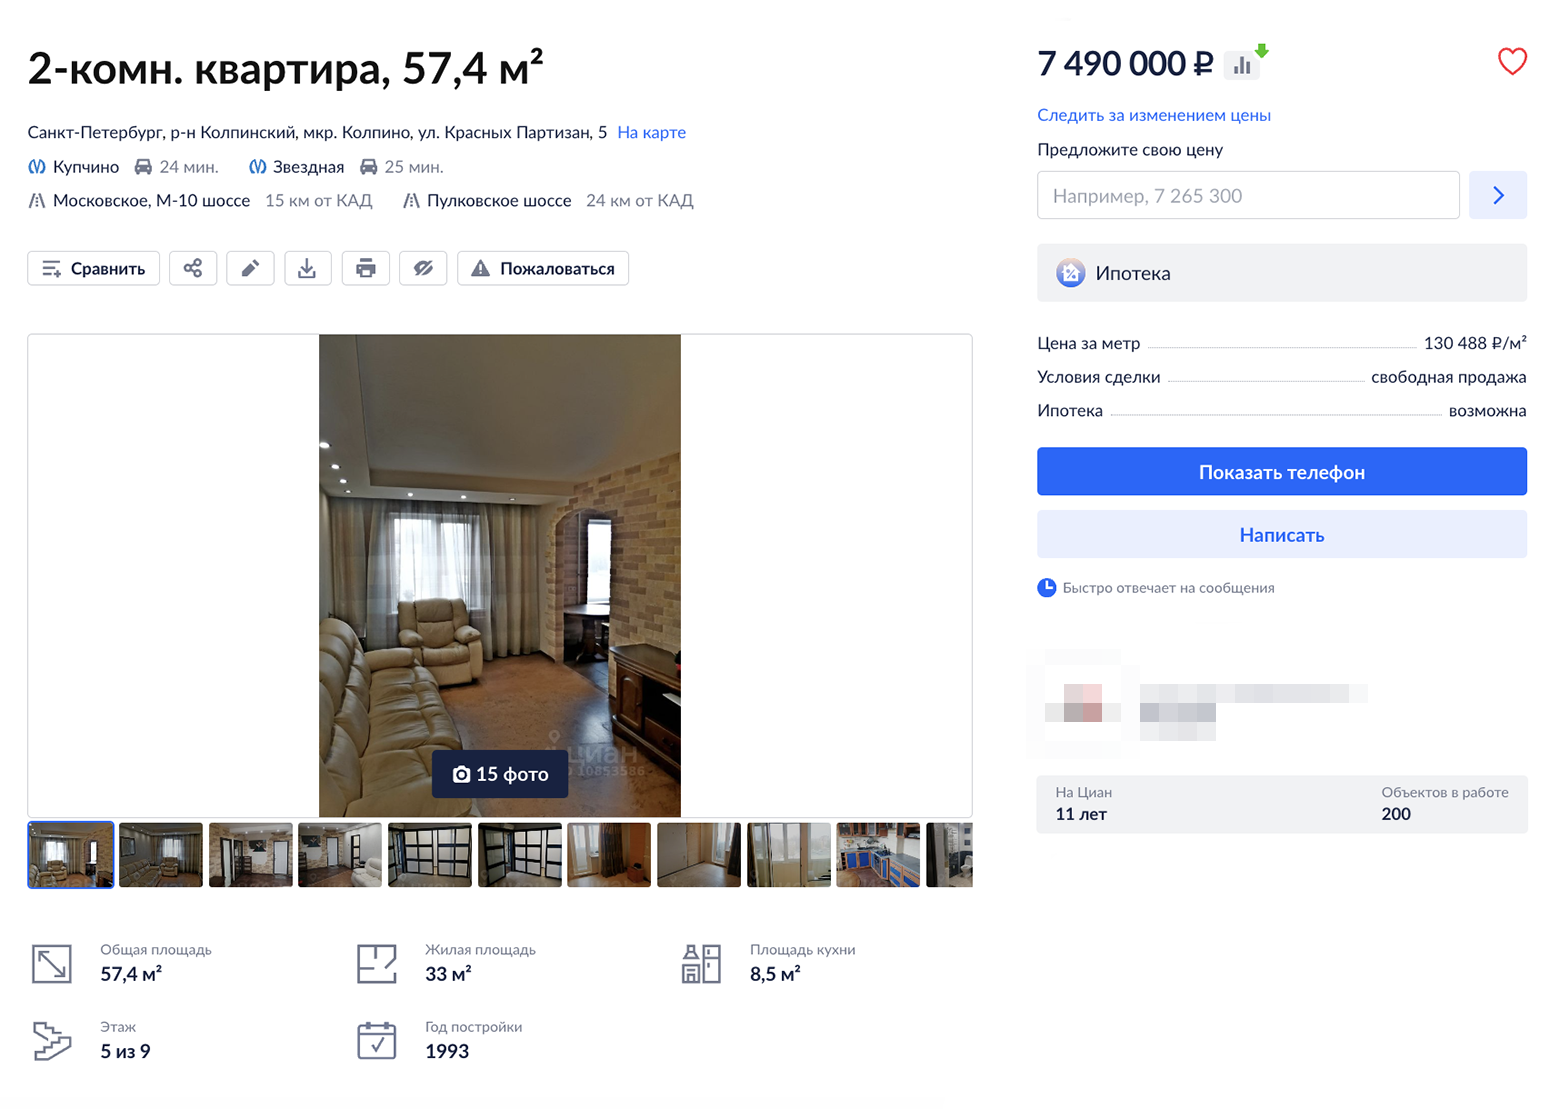 Хорошо отремонтированную квартиру с мебелью в Колпине предлагают за 7 490 000 ₽. Недавно приценивался к аналогичным вариантам в Купчине — как правило, это убитые квартиры. Источник: cian.ru